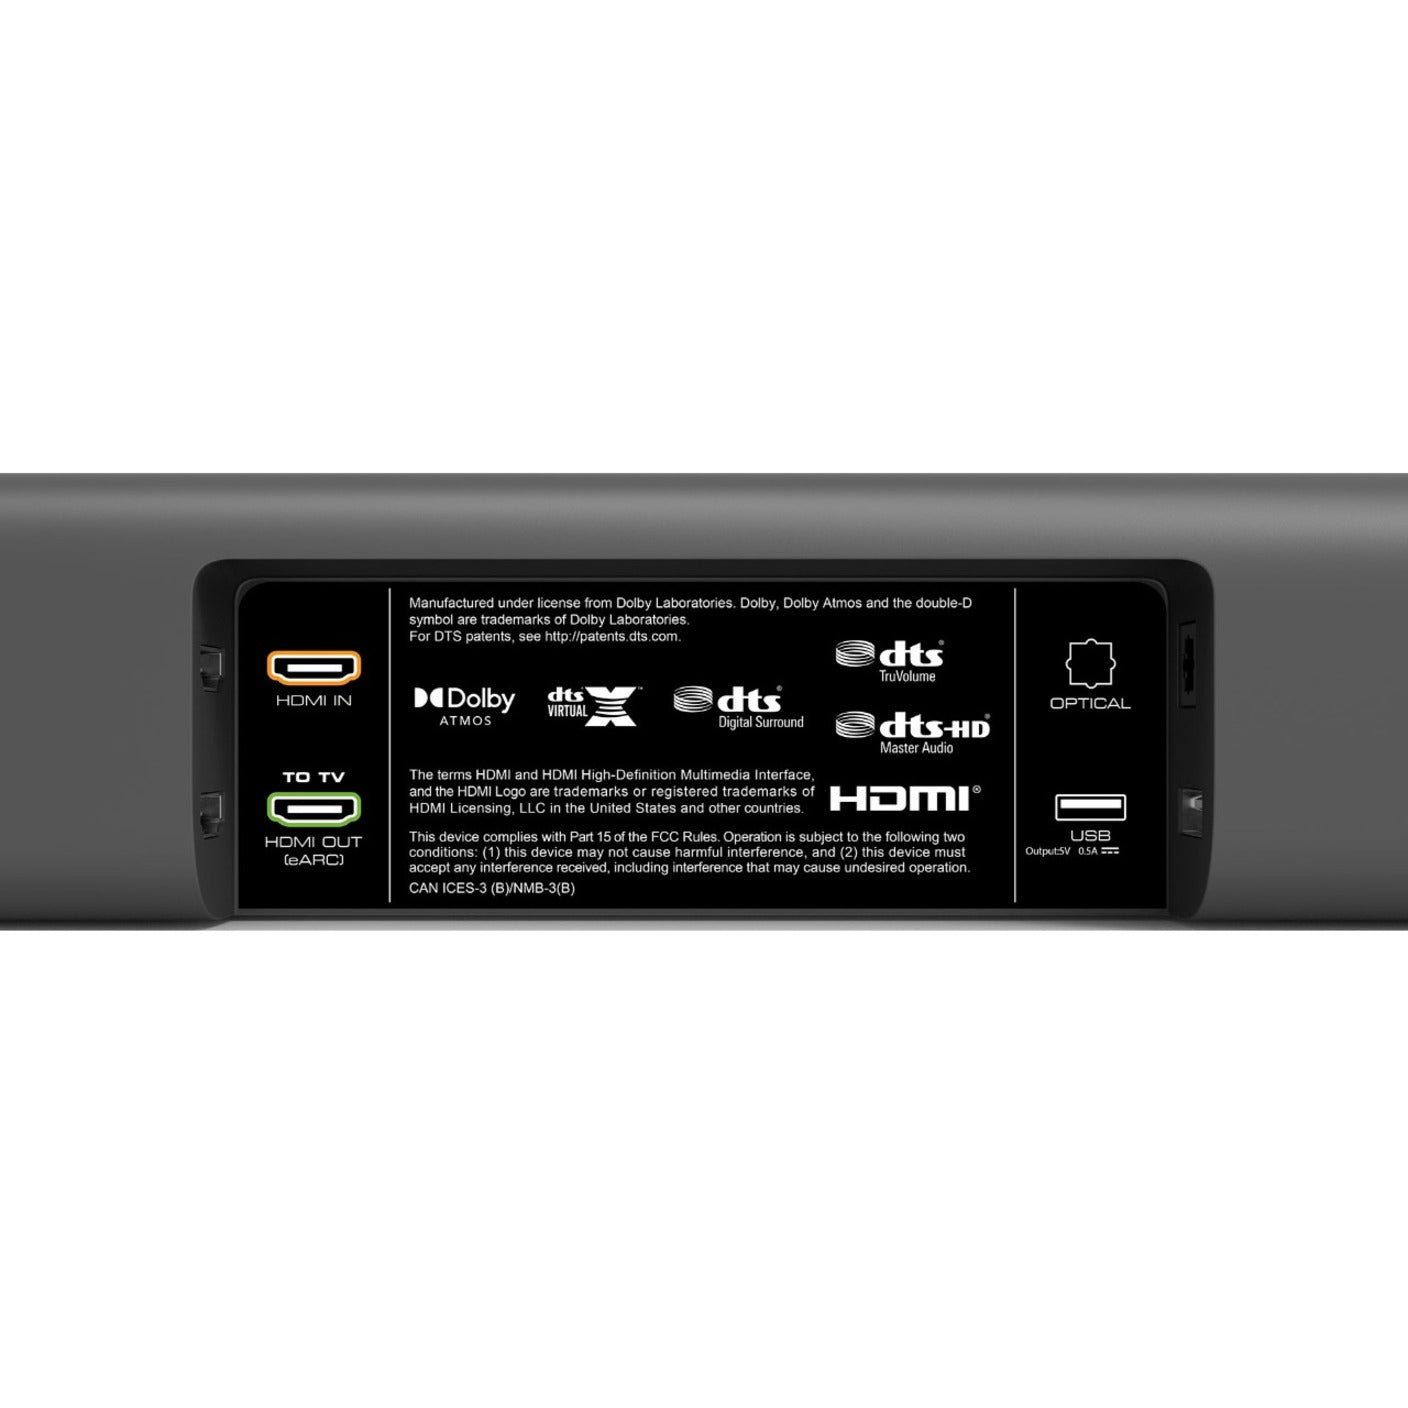 VIZIO M51AX-J6 M-Serie 5.1 Heimkino-Soundbar mit Dolby Atmos und DTS:X kabellosem Subwoofer Surround Sound